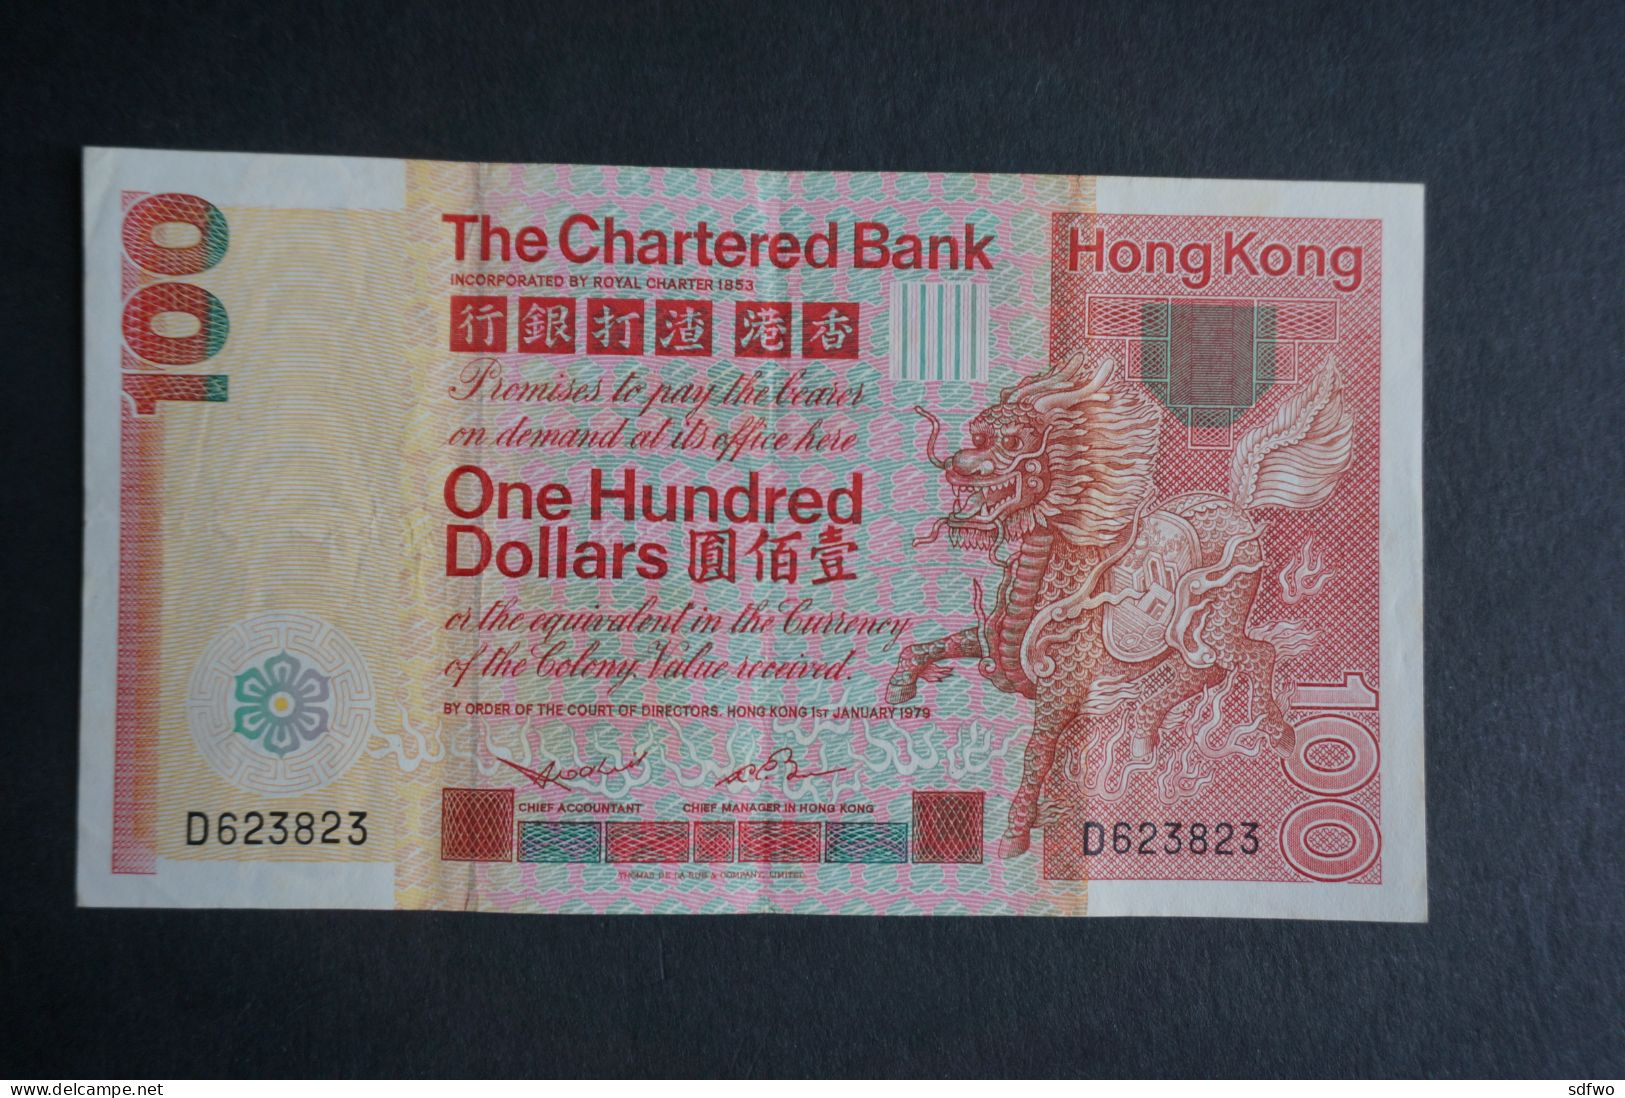 (M) 1979 HONG KONG OLD ISSUE - The Chartered Bank 100 Dollars #D623,823 - Hongkong